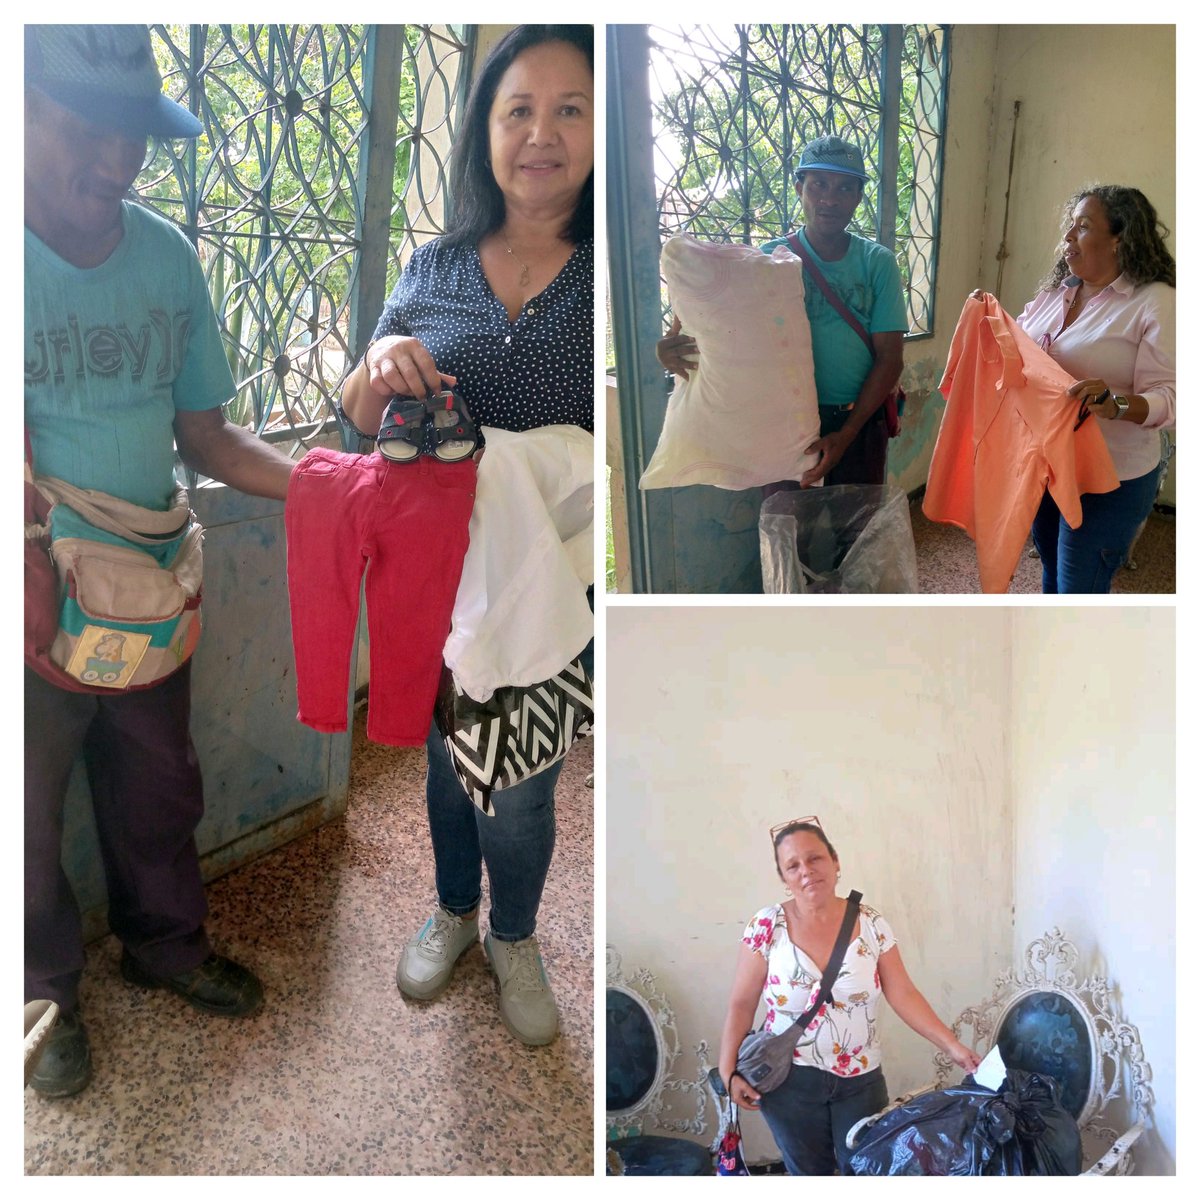 @pjcharallave hicimos entrega de donativos de ropas usadas en buenas condiciones a dirigentes y militantes de @Pr1meroJusticia la solidaridad nos une @hcapriles #VamosAEcharPalante por #LaVenezuelaDelEncuentro 
@Activismopjmir 
@ActivismoPJ